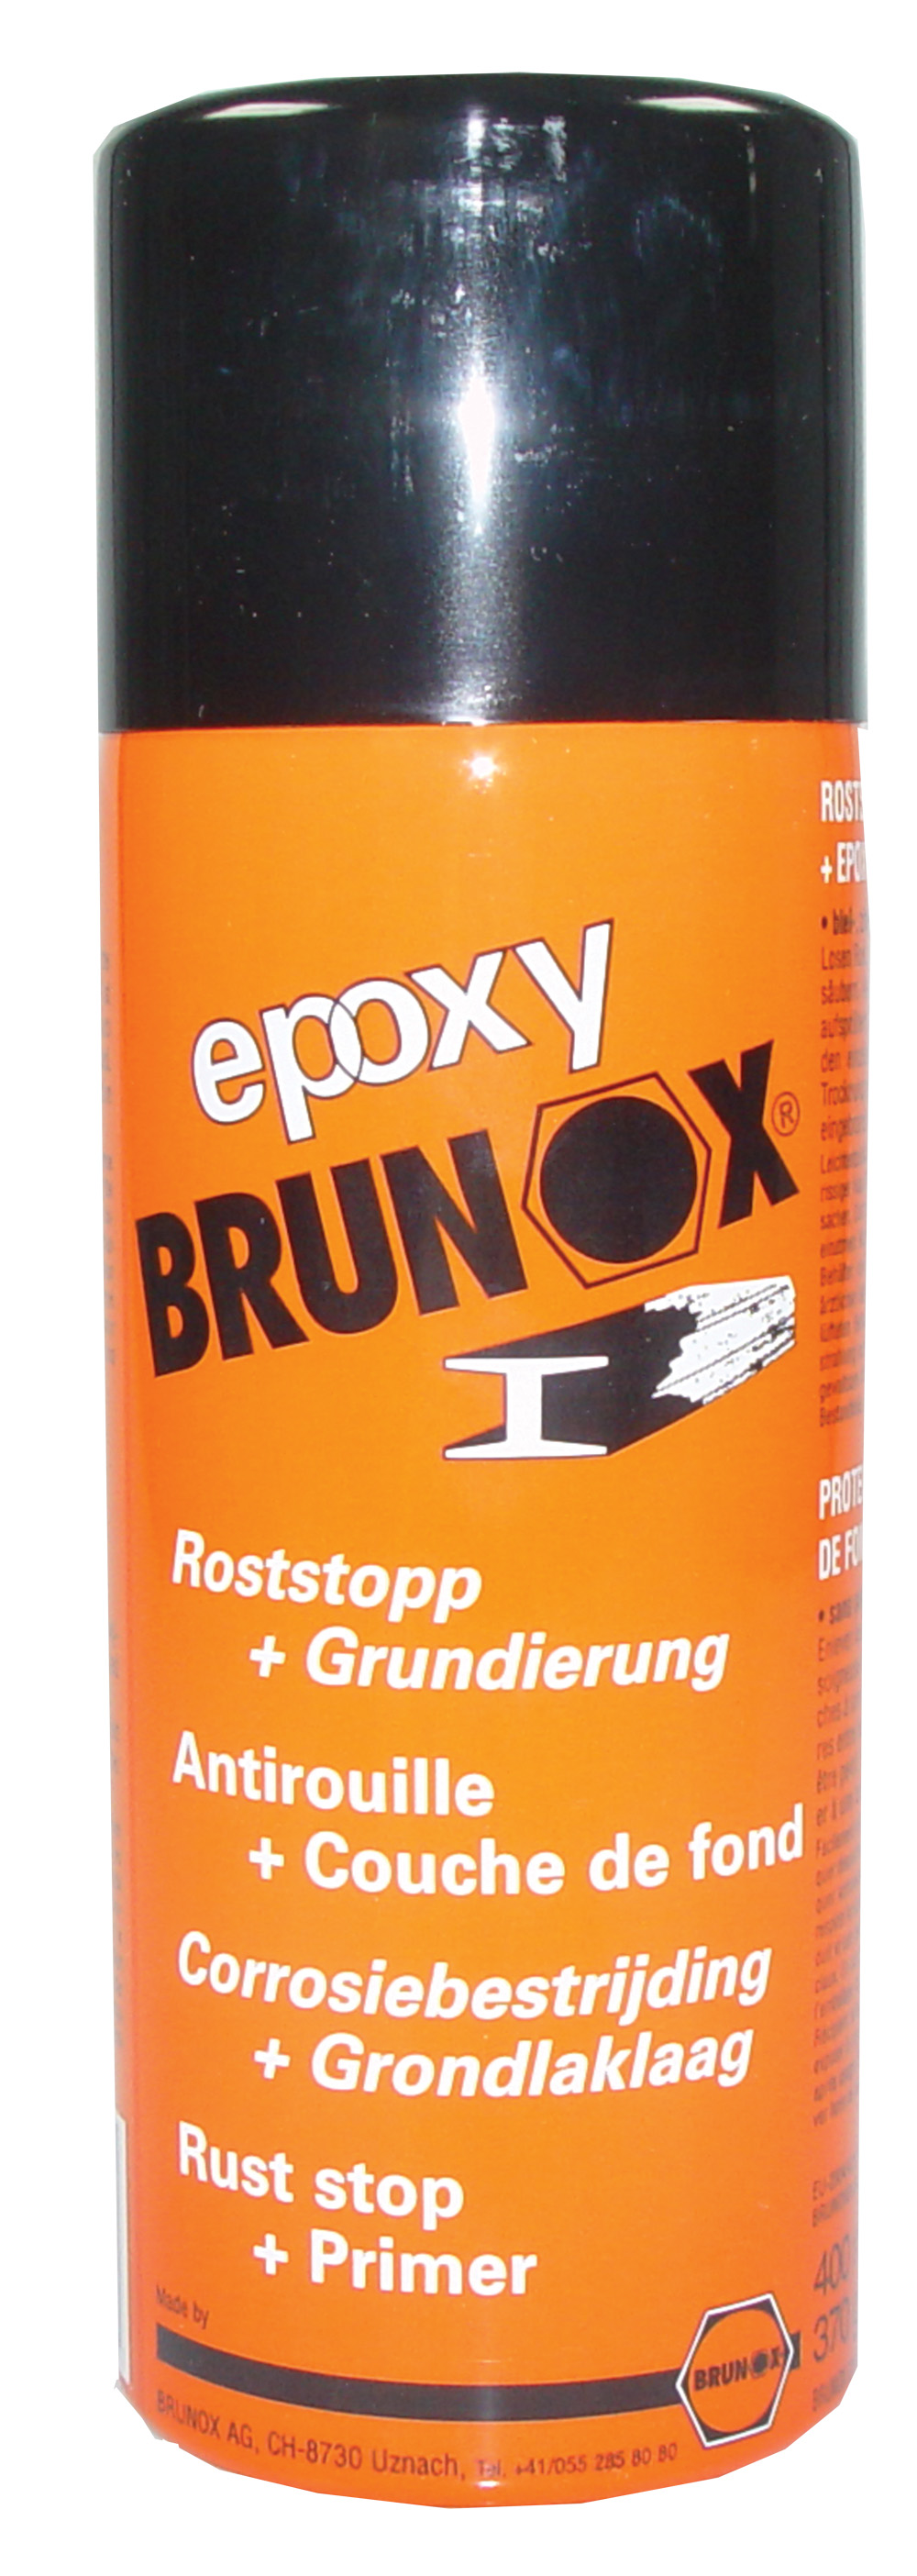 Brunox Epoxy Rostumwandler (250 ml) Erfahrungen 4.3/5 Sternen